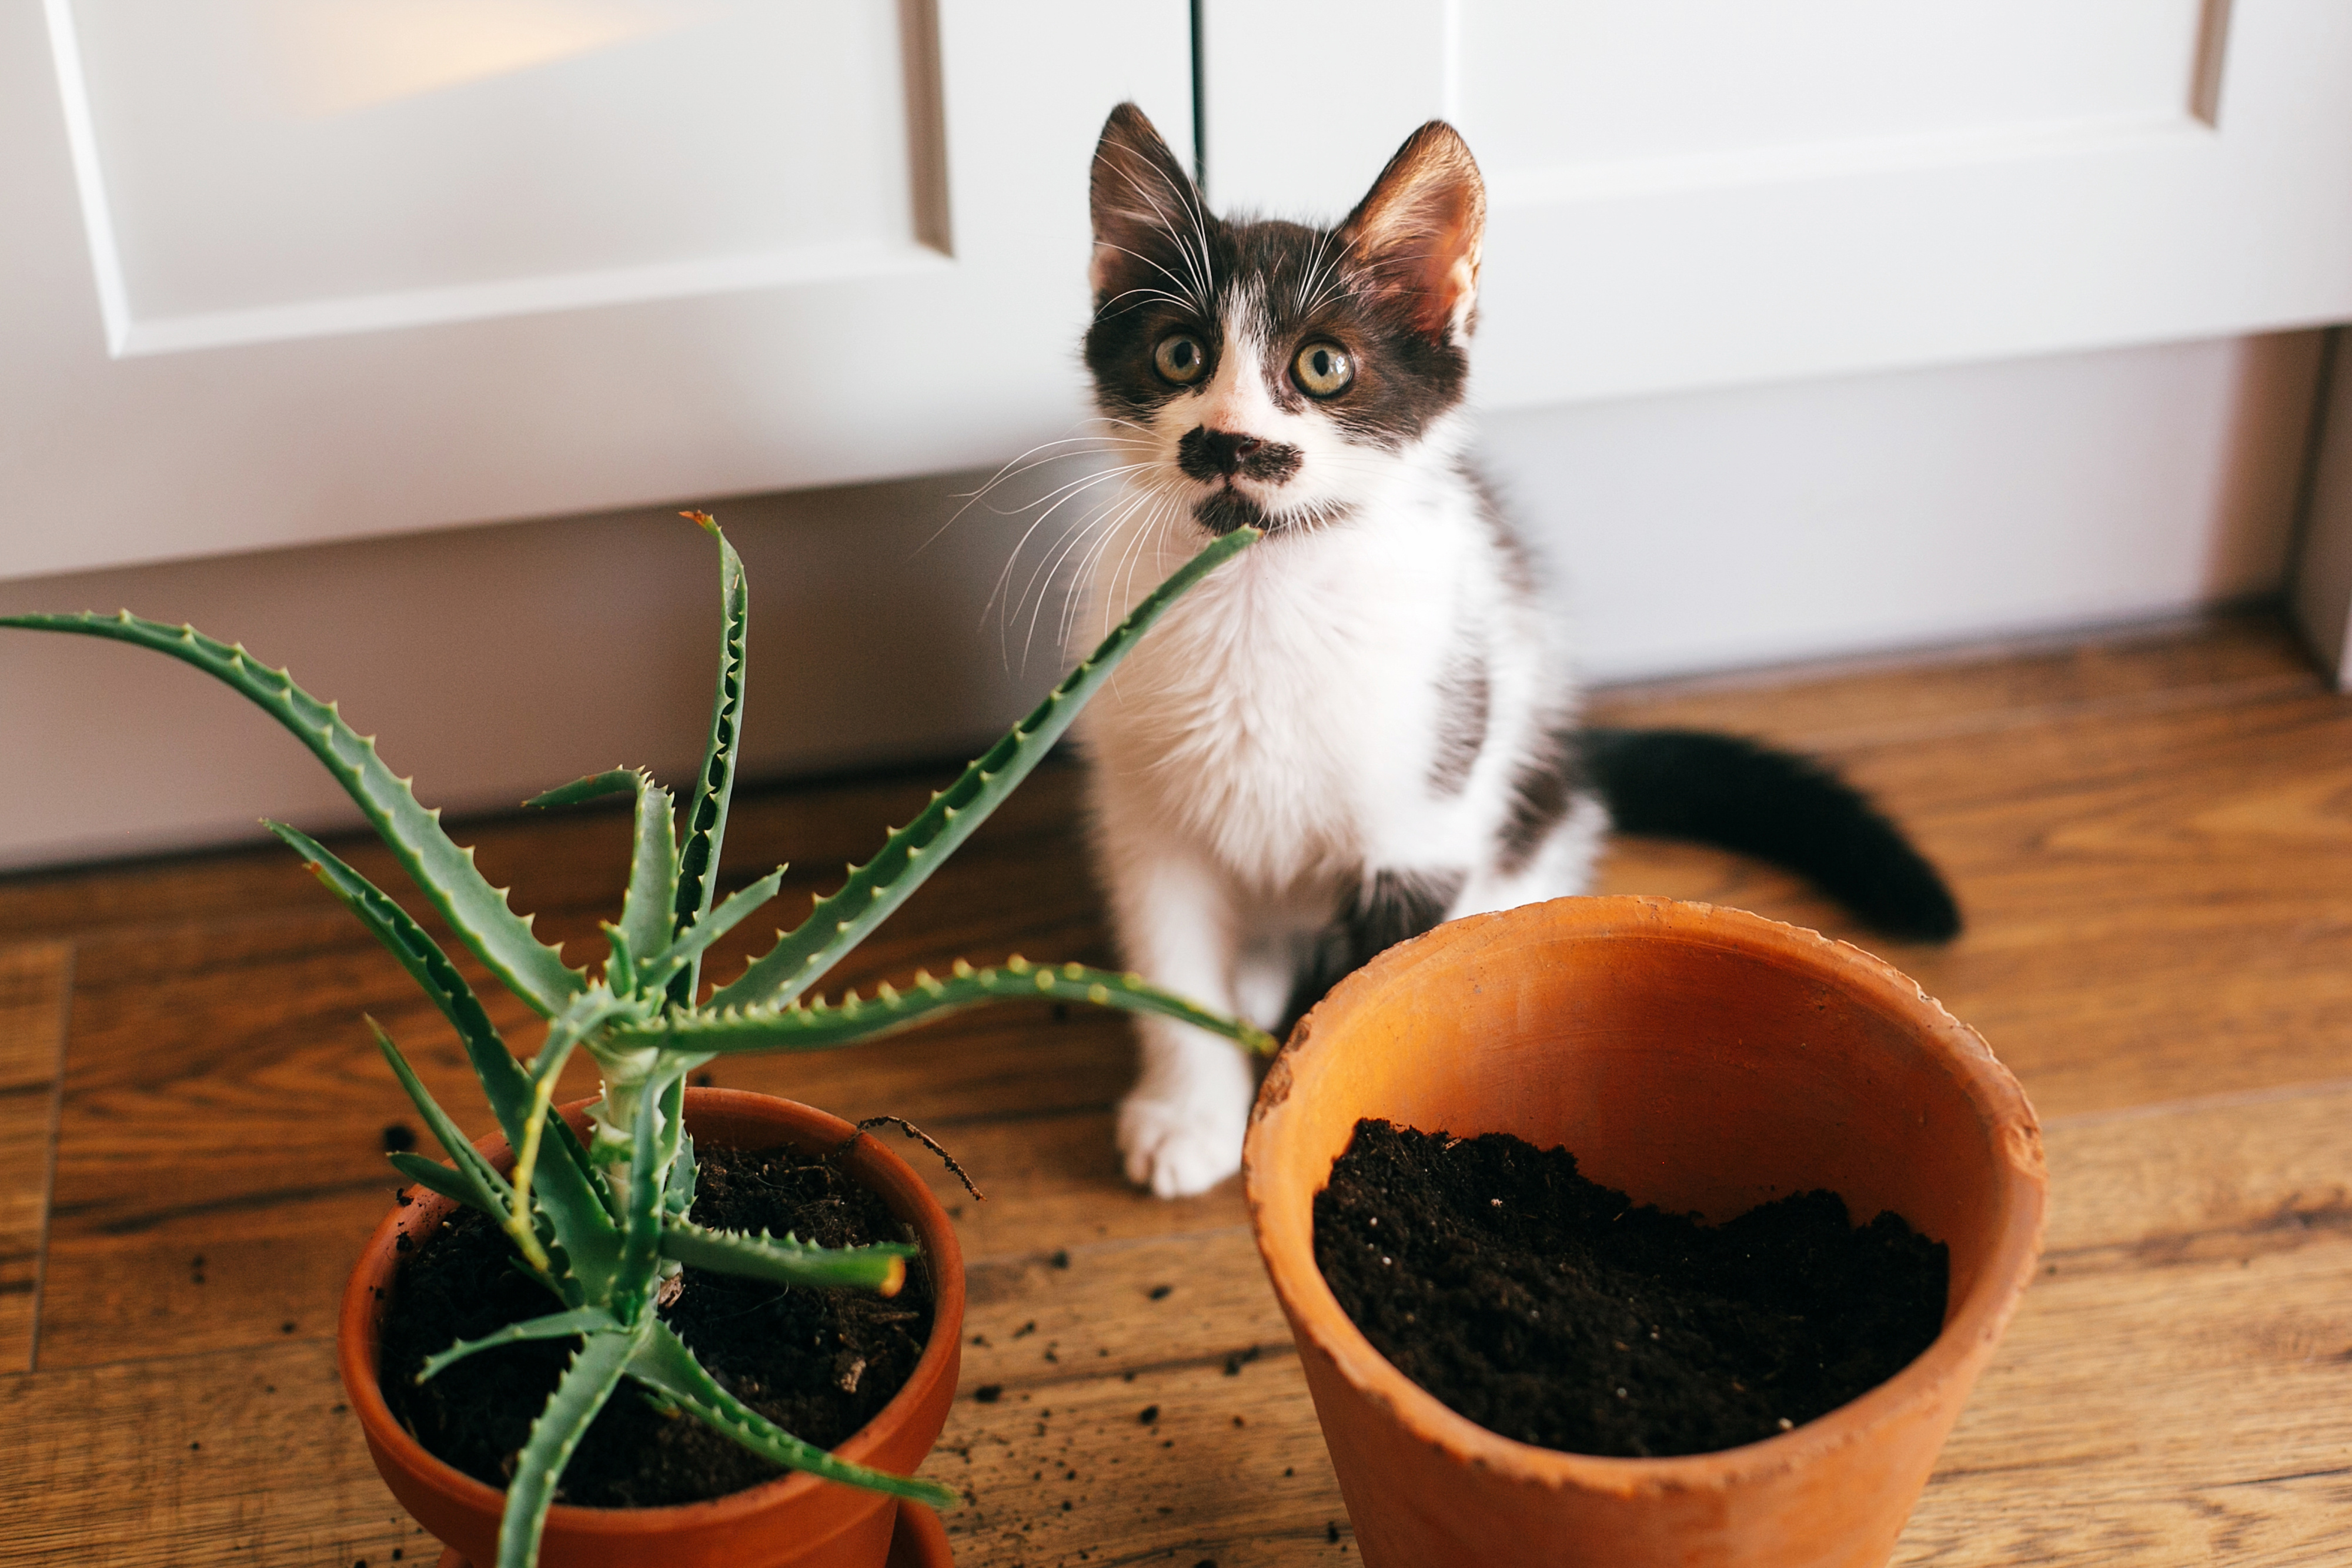 Katze pinkelt in Blumentopf: Warum und was tun?